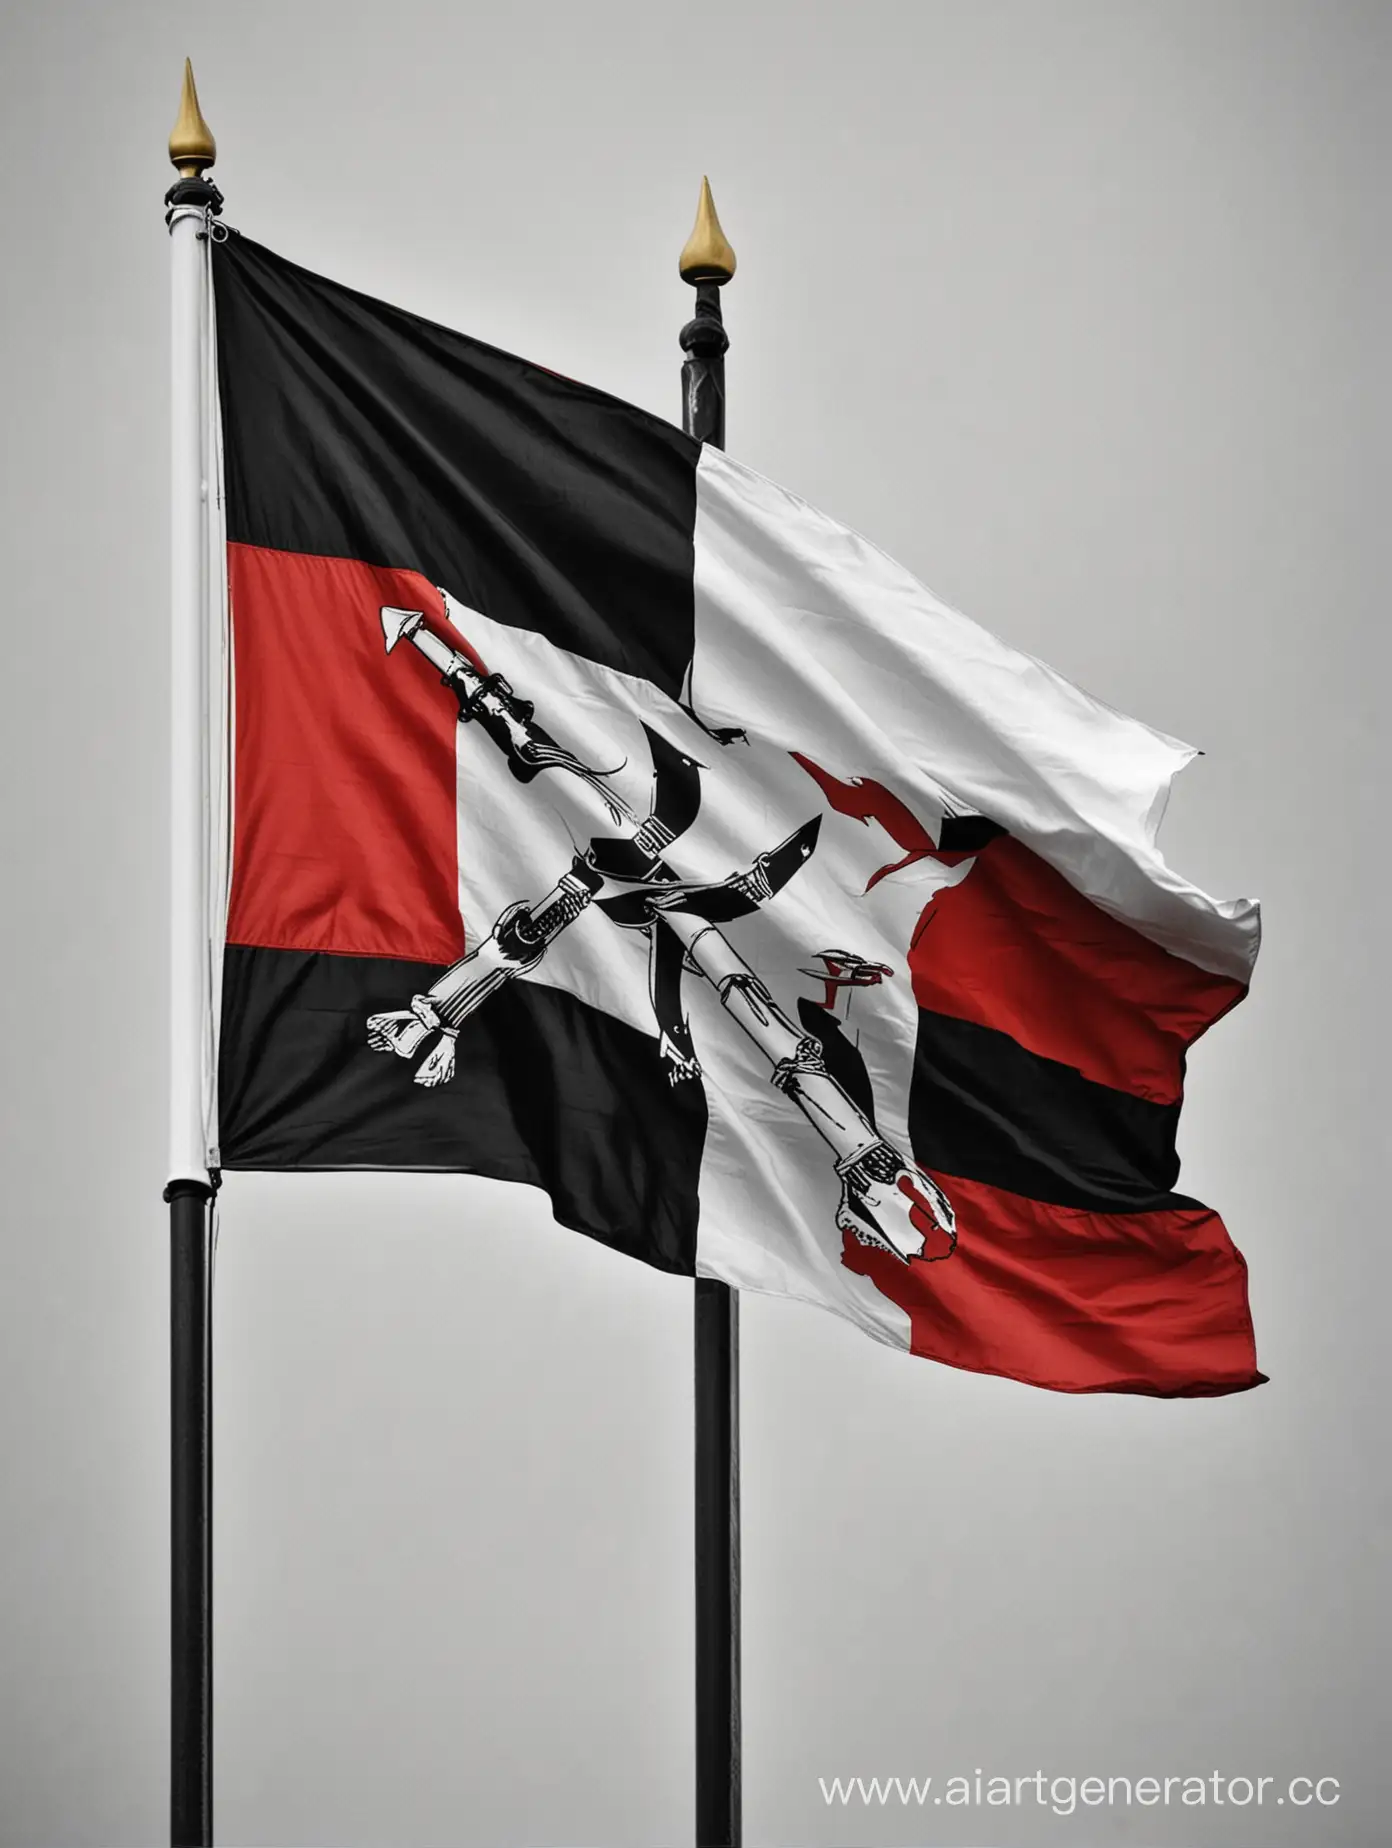 Флаг, триколор, цвета белый чёрный и красный, посередине серп и молот
